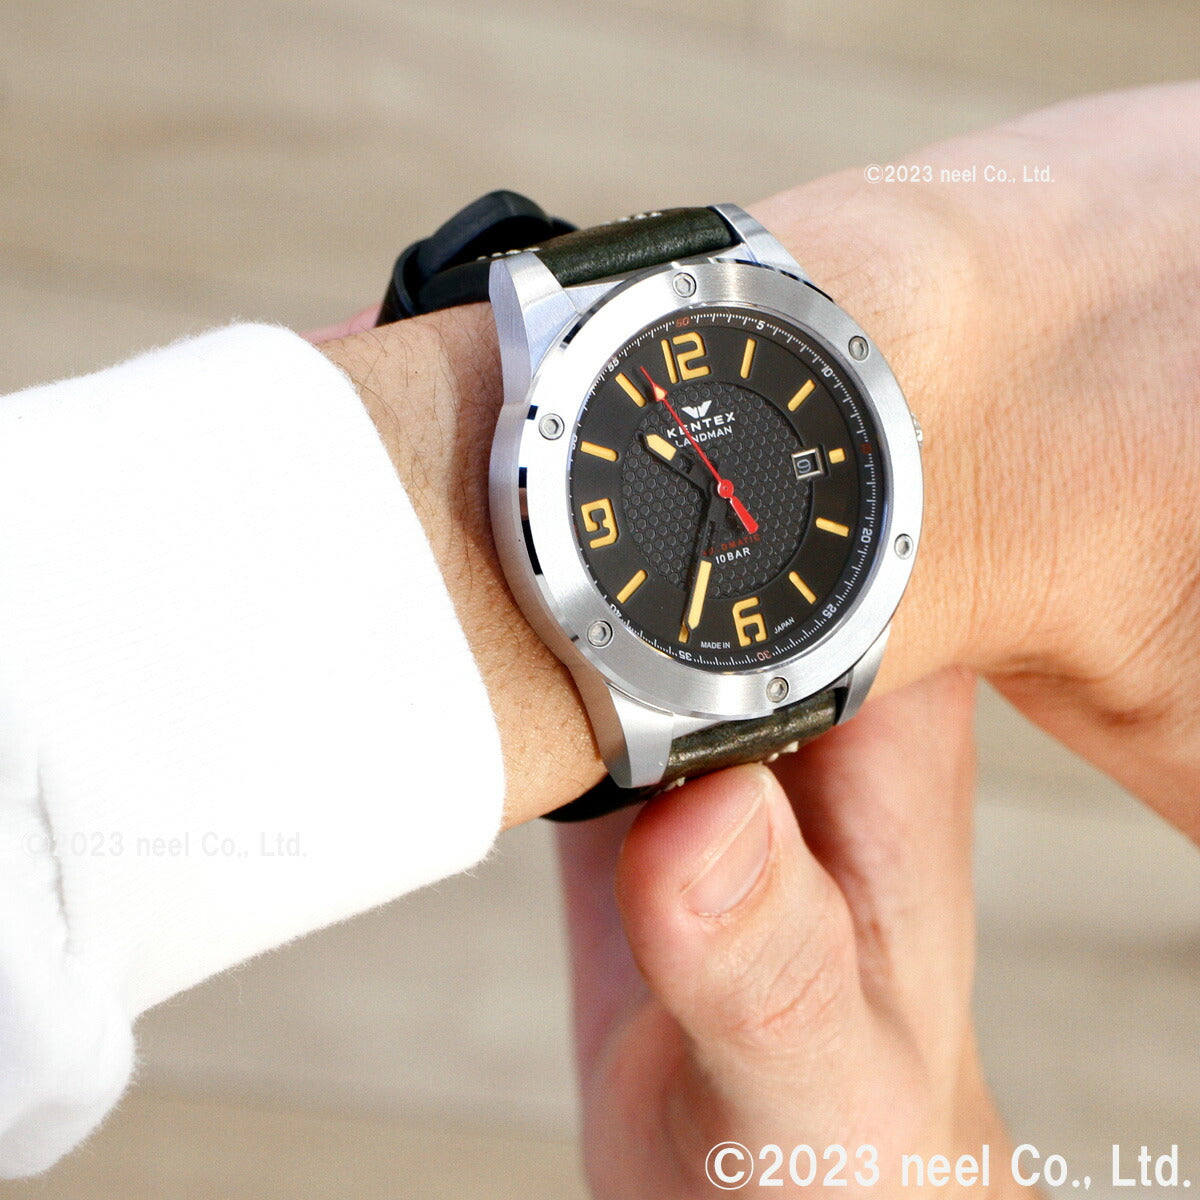 ケンテックス KENTEX 限定モデル 腕時計 時計 メンズ ランドマン アドベンチャー デイト 日本製 S763X-4